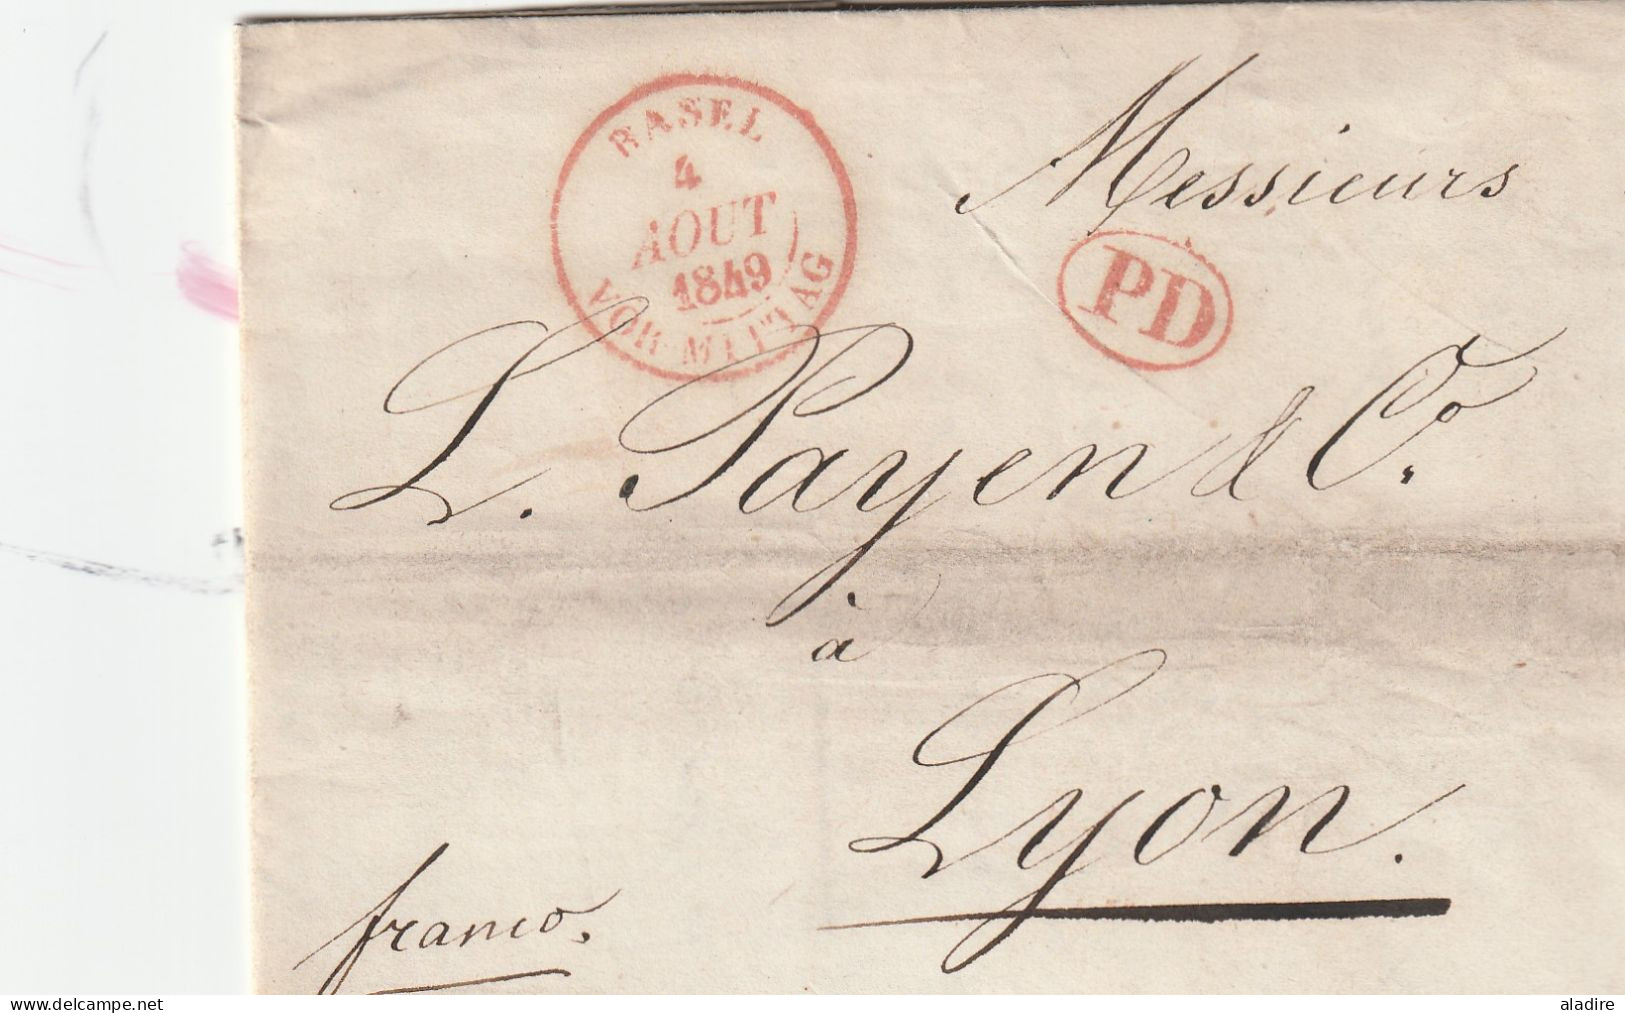 19e siècle - 1811 / 1864 - petite collection de 15 lettres pliées de SUISSE - marcophilie - marques postales - 30 scans